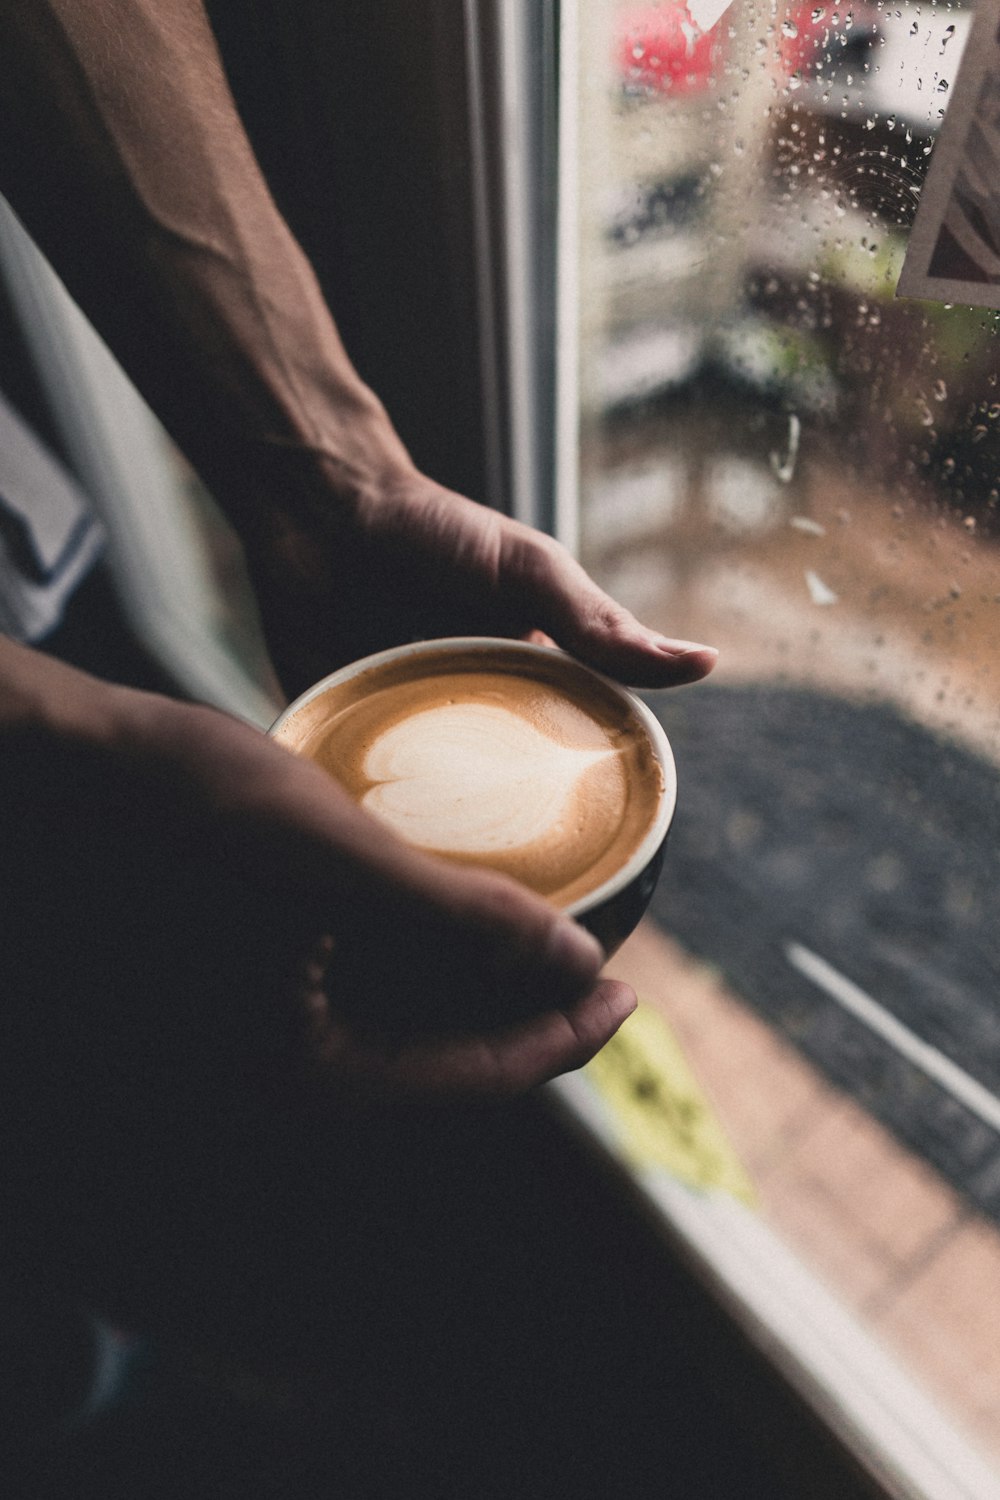 persona sosteniendo una taza con café al lado de la ventana de vidrio